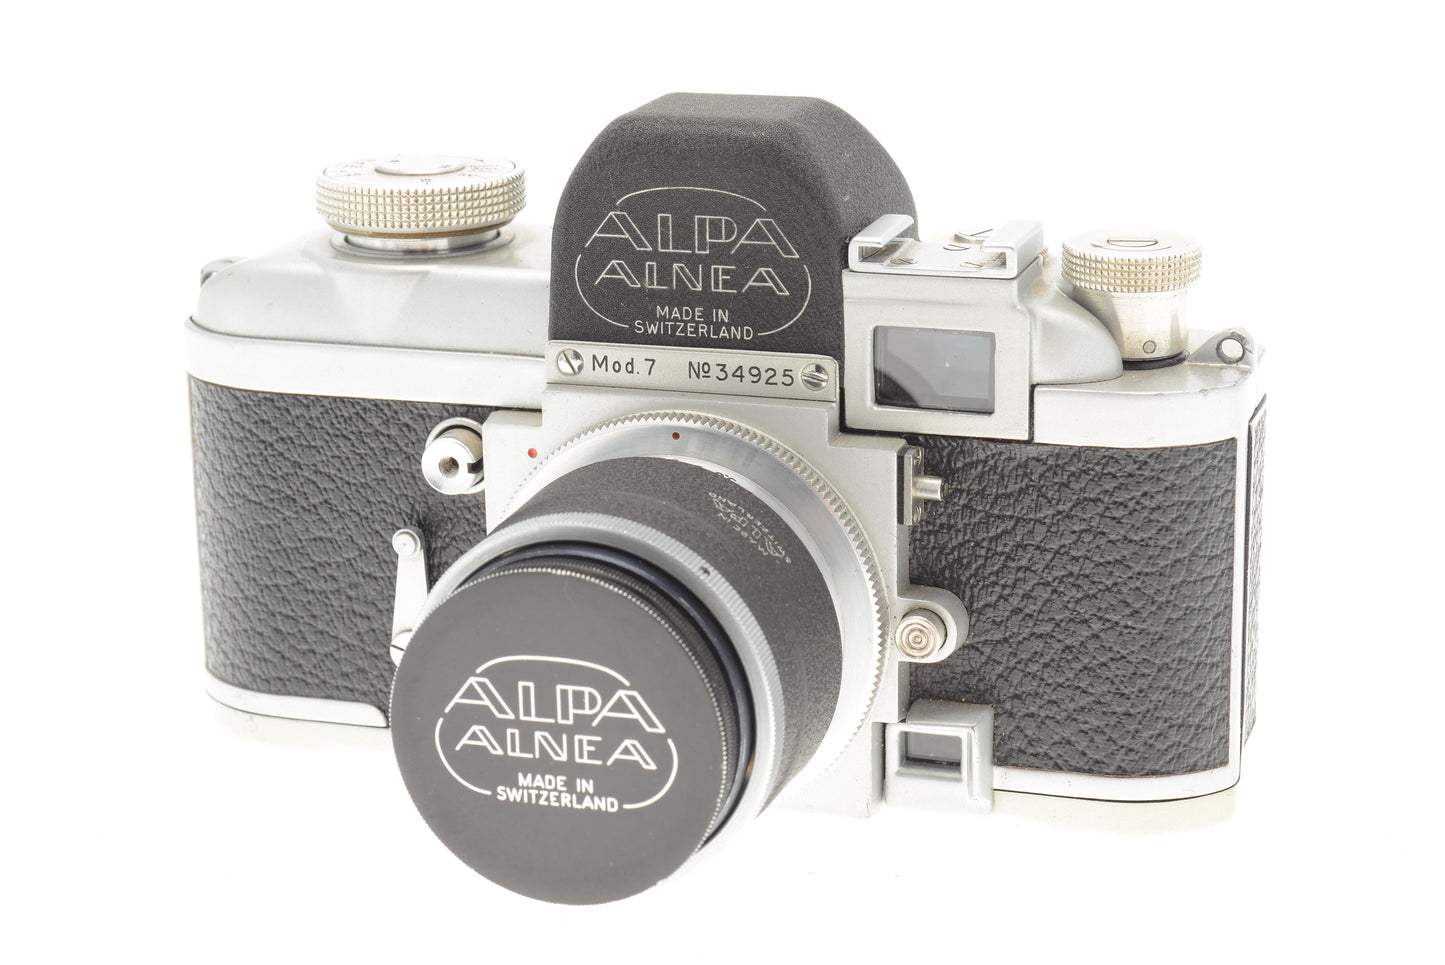 Alpa Alnea Mod. 7 - Camera